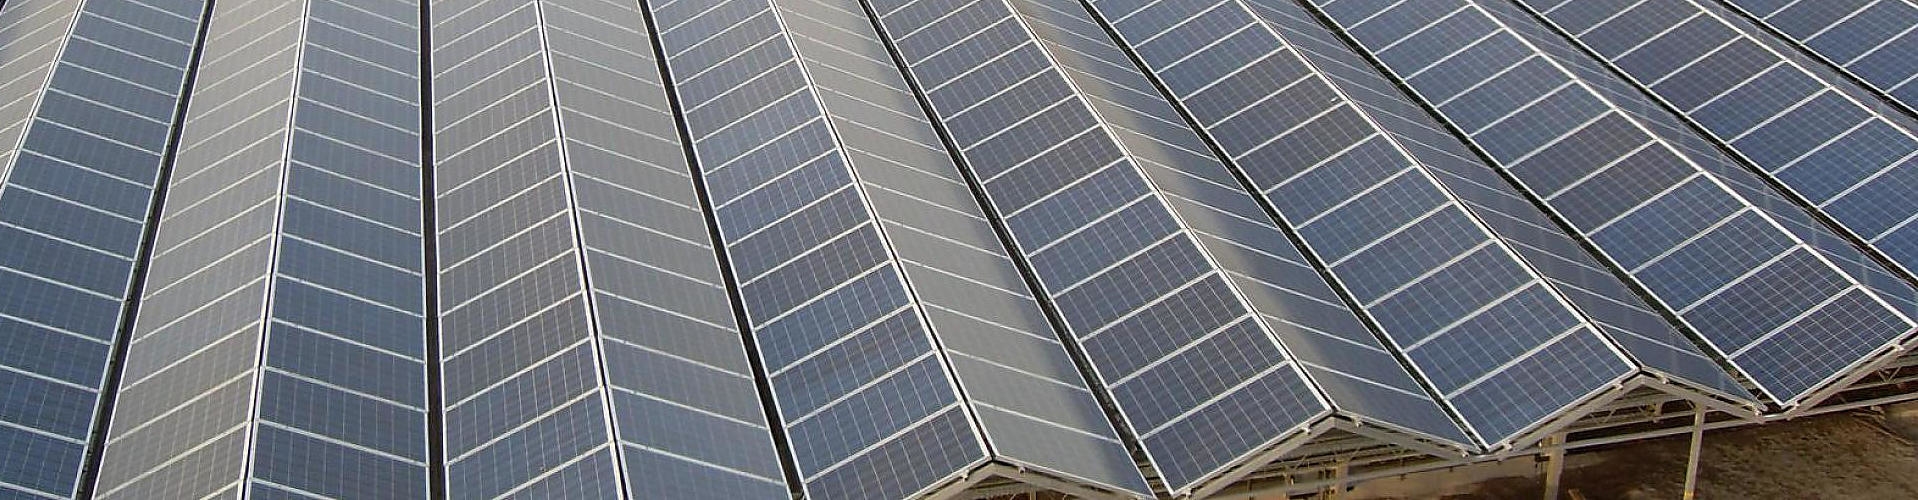 Solarmodule: nachhaltig und kostensenkend